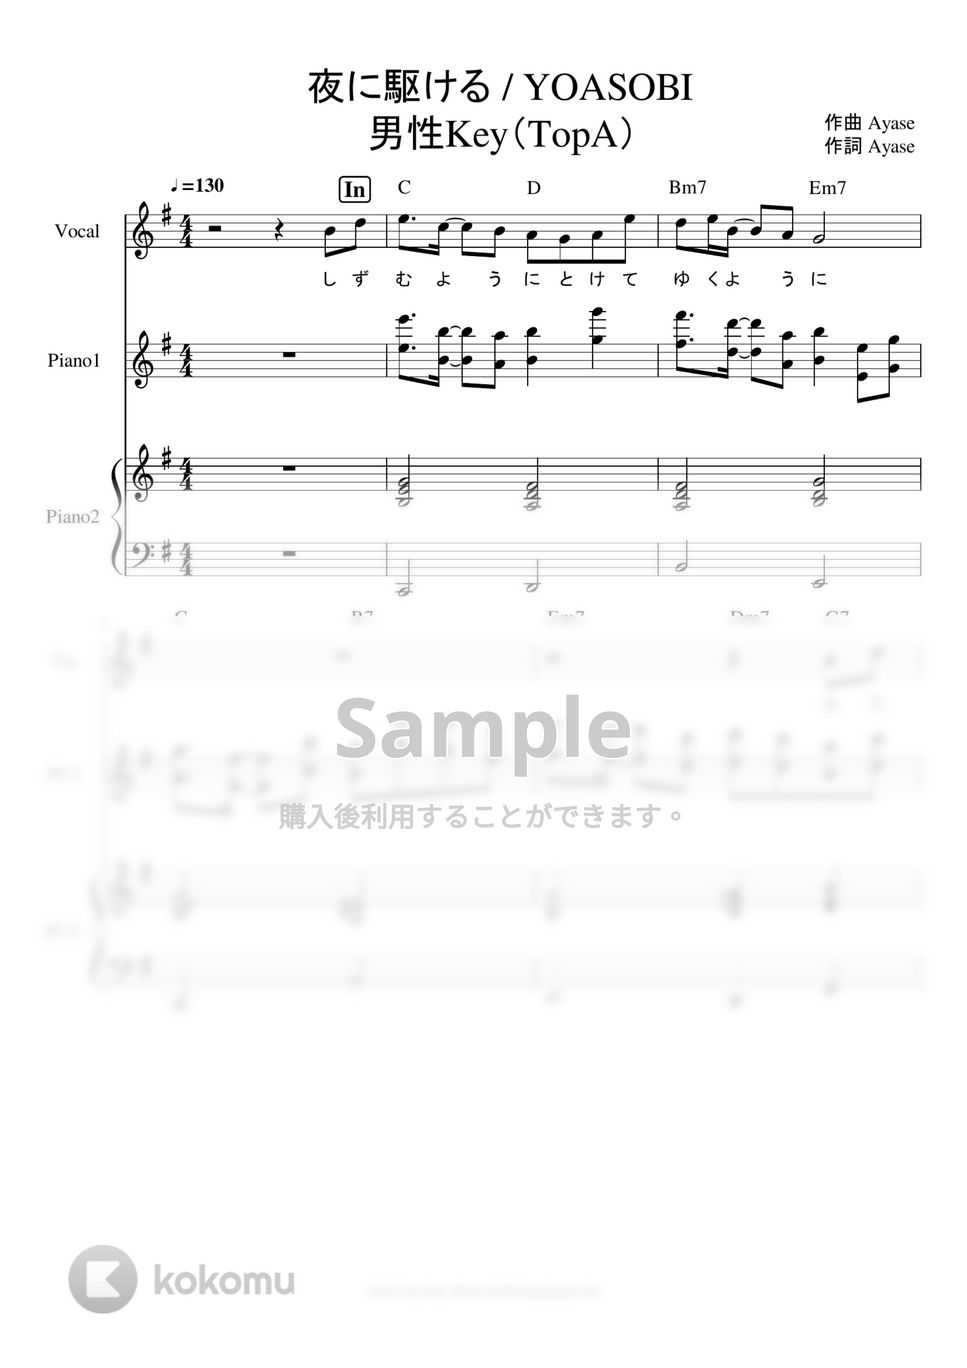 YOASOBI - 夜に駆ける ピアノパート譜※男声アレンジ (男声キーに編曲したピアノパート譜です。) by ましまし